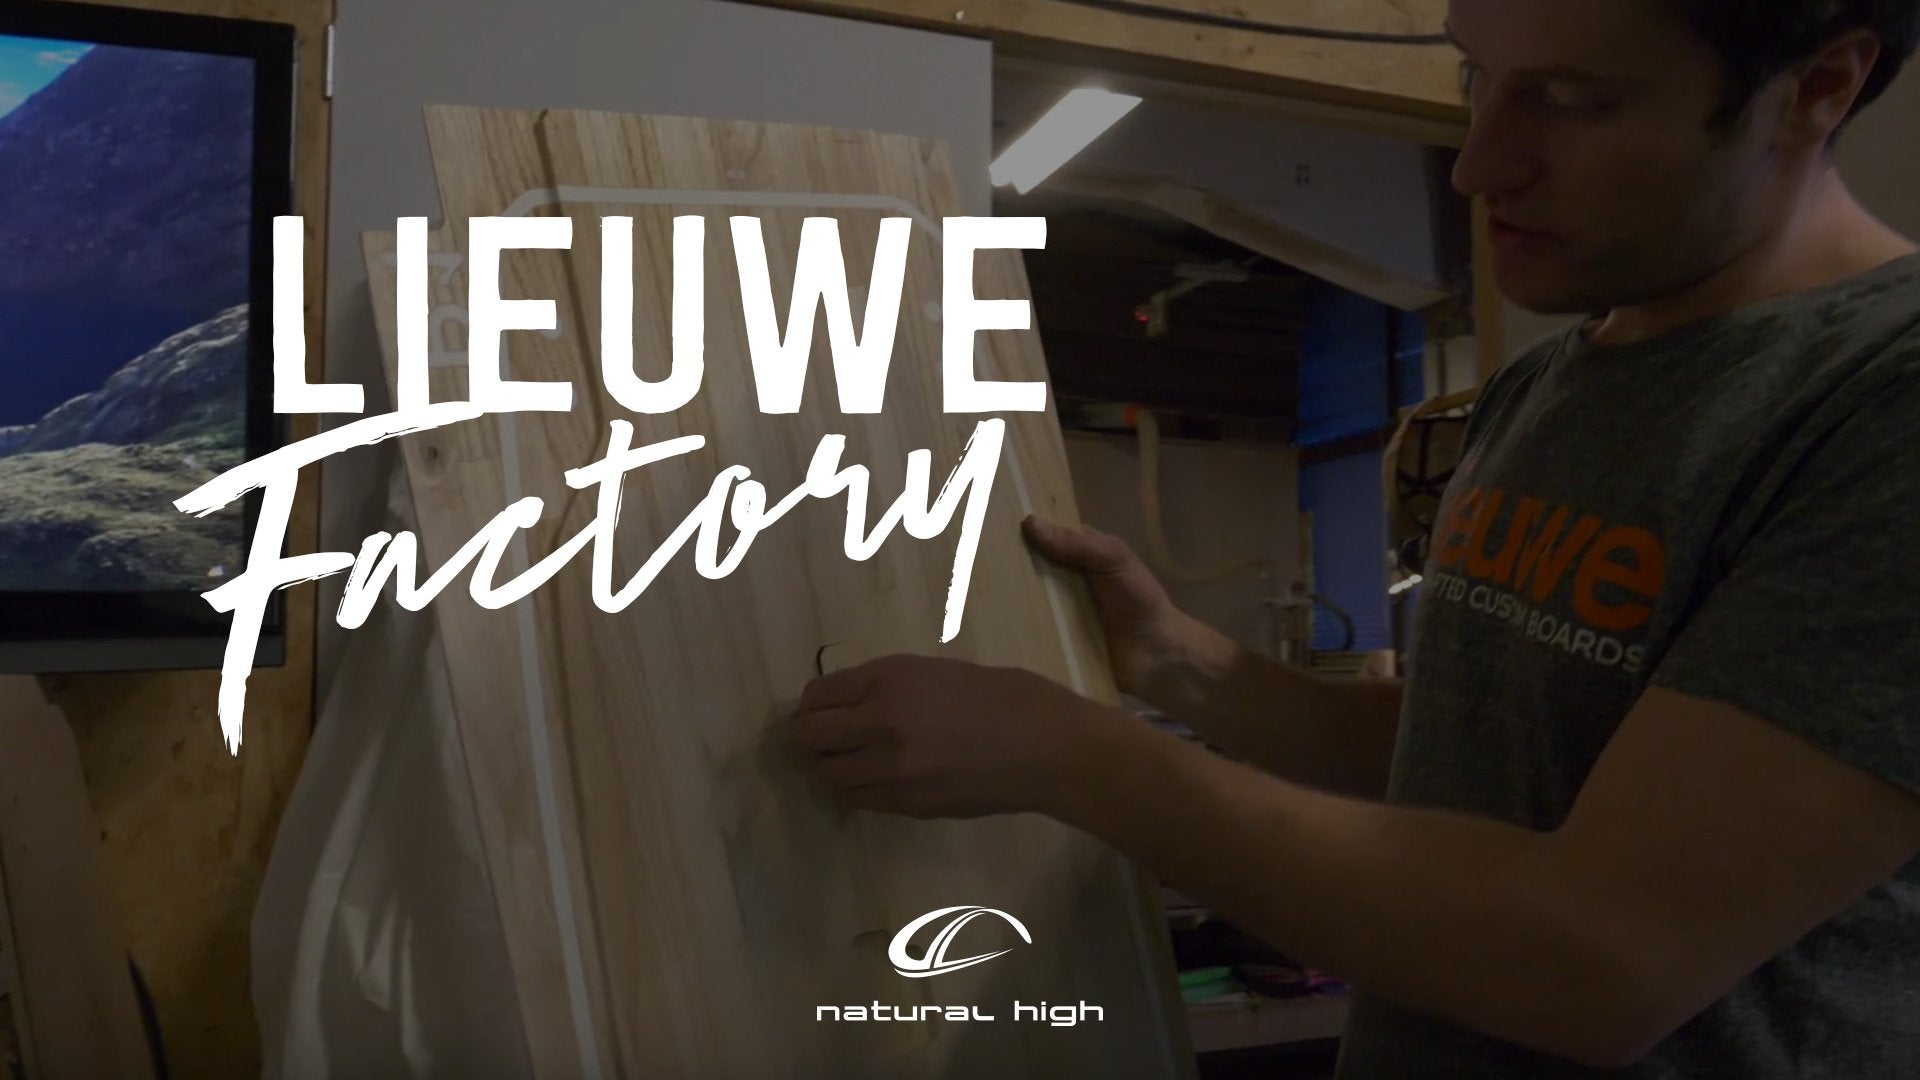 Natural High at Lieuwe Boards factory